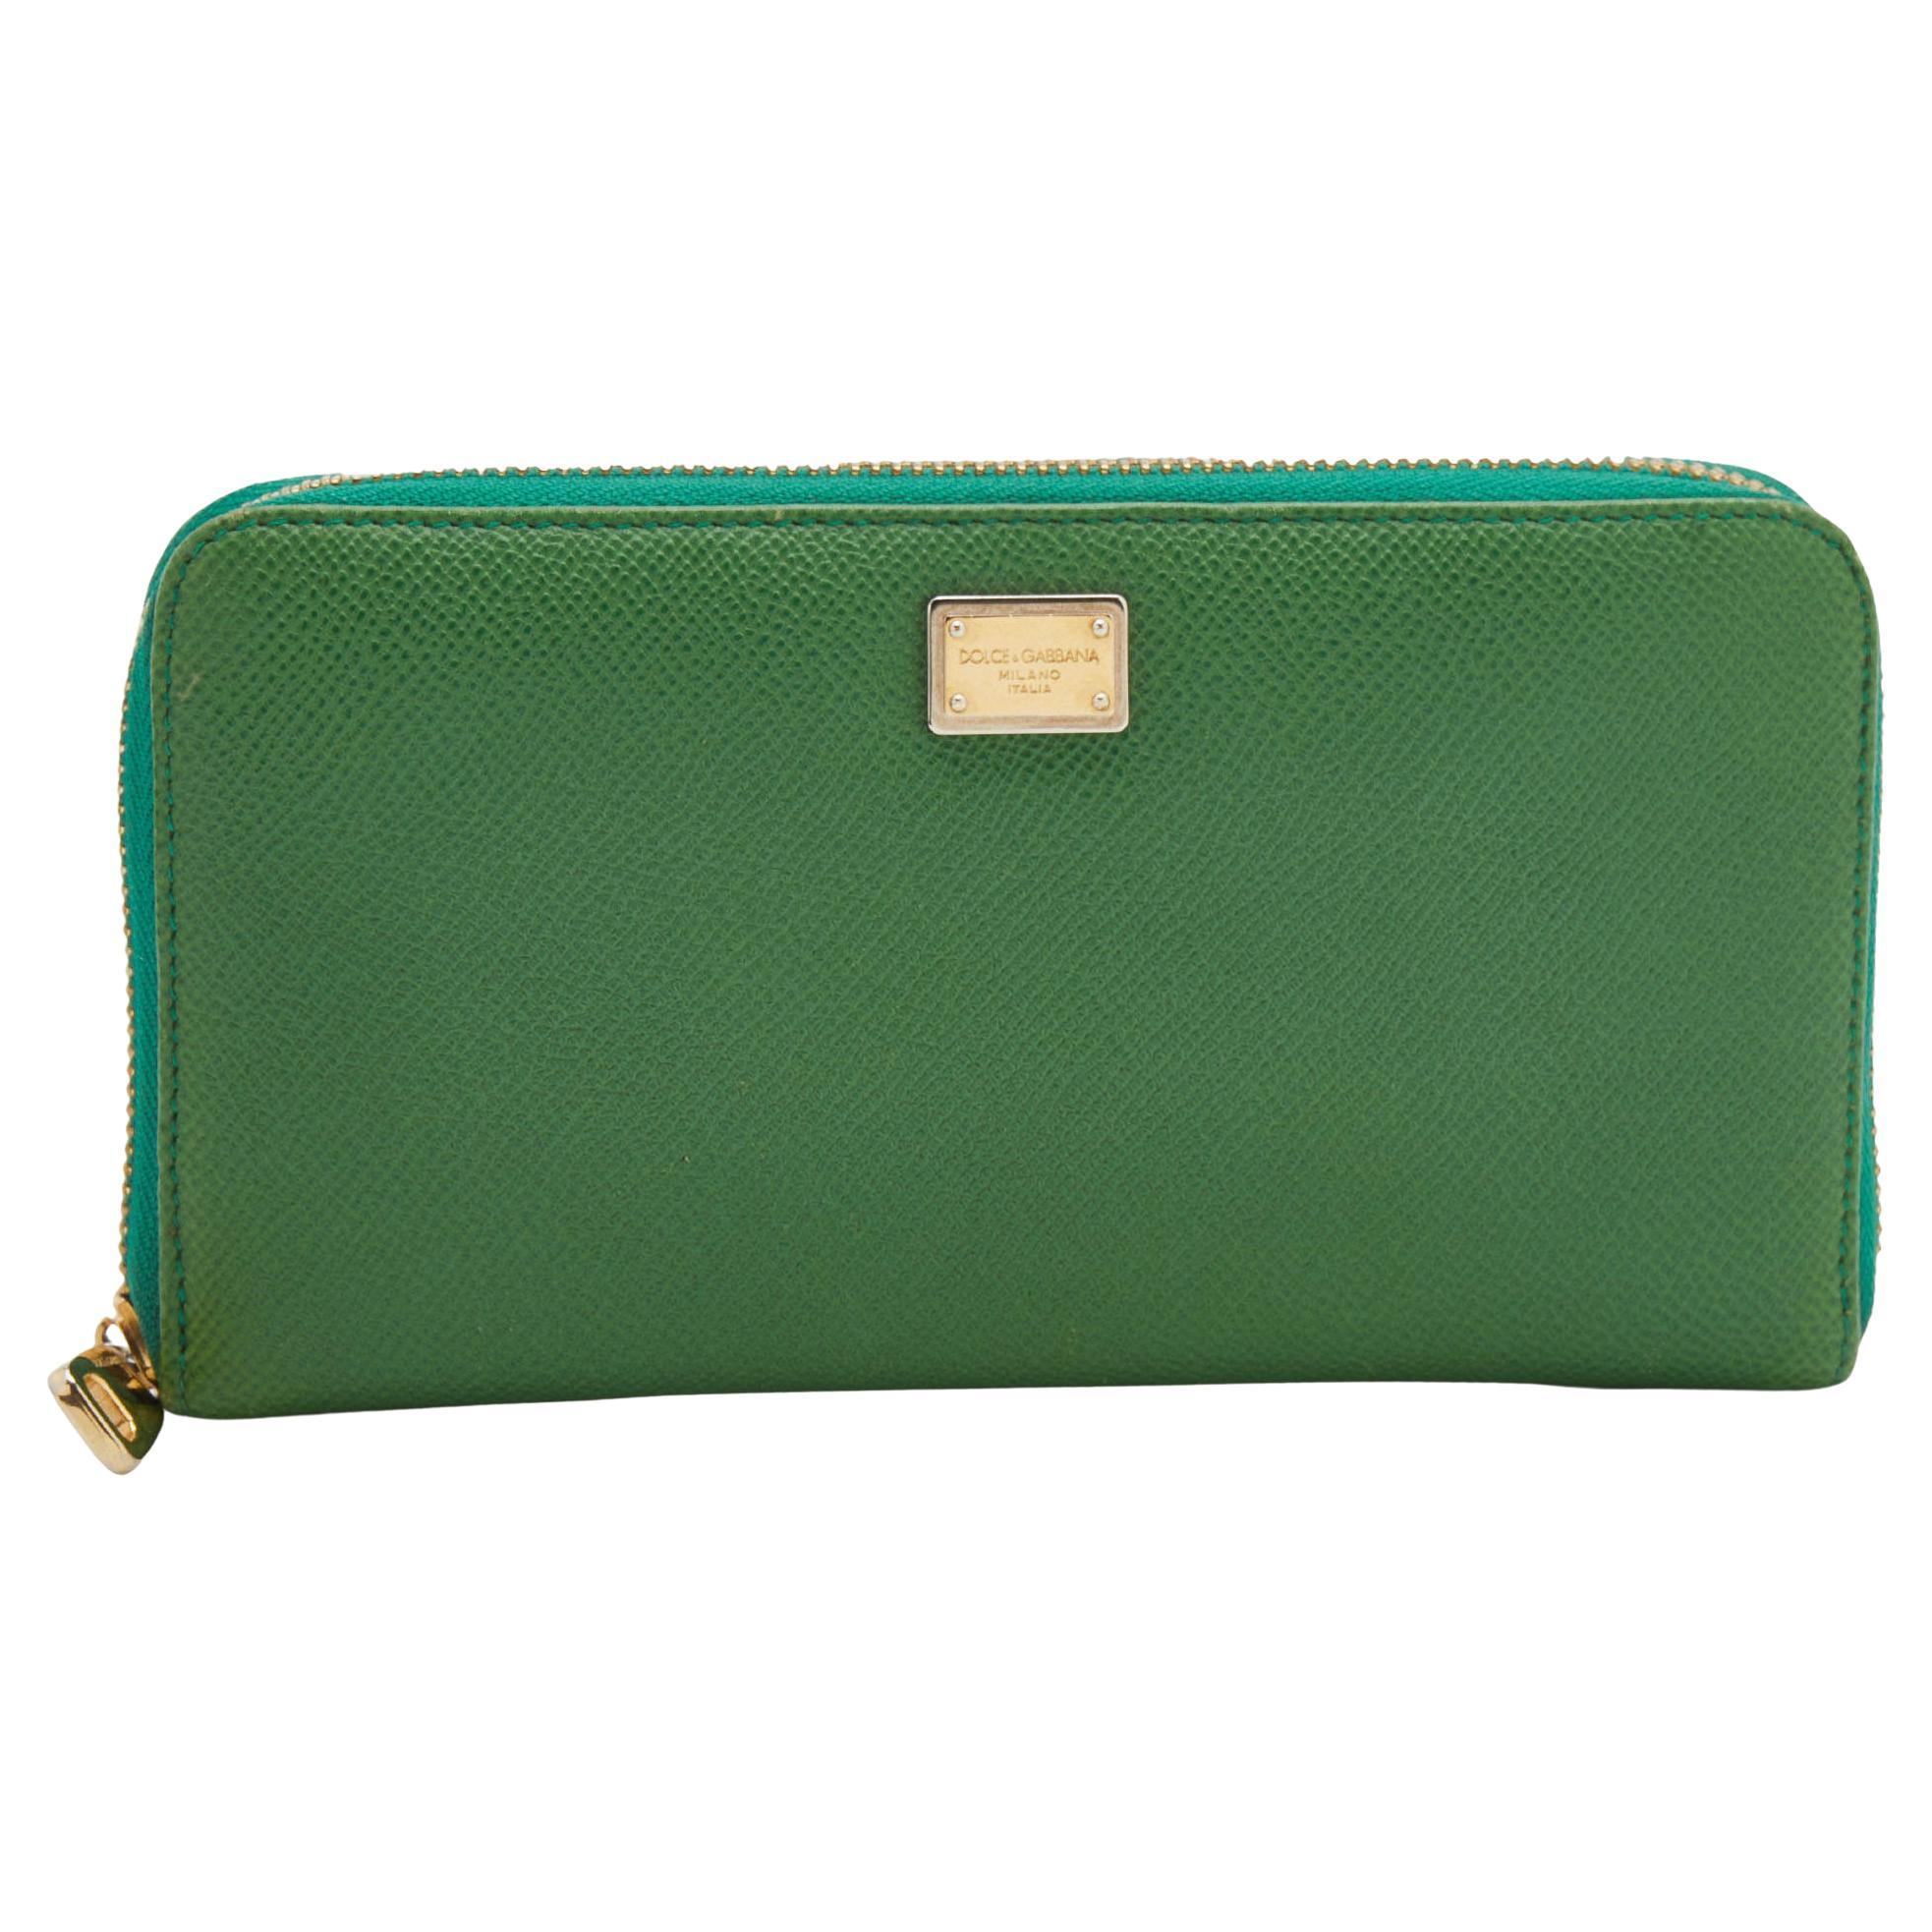 Dolce & Gabbana Green Leather Continental Zip Around Wallet